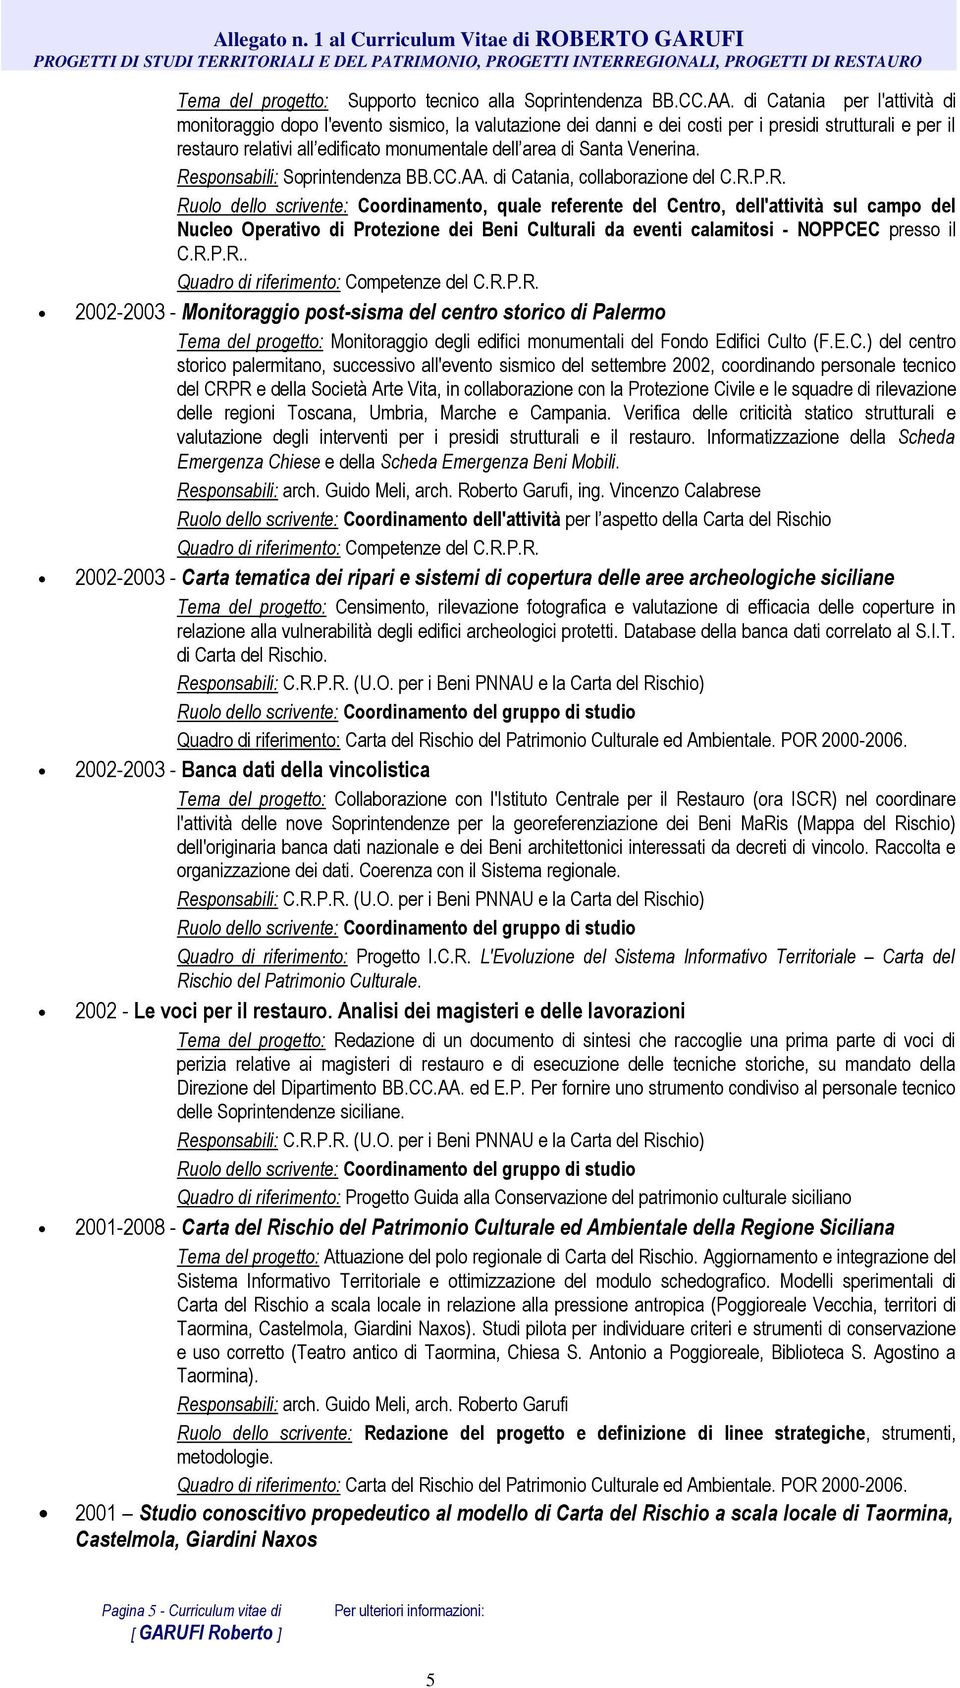 AA. di Catania per l'attività di monitoraggio dopo l'evento sismico, la valutazione dei danni e dei costi per i presidi strutturali e per il restauro relativi all edificato monumentale dell area di